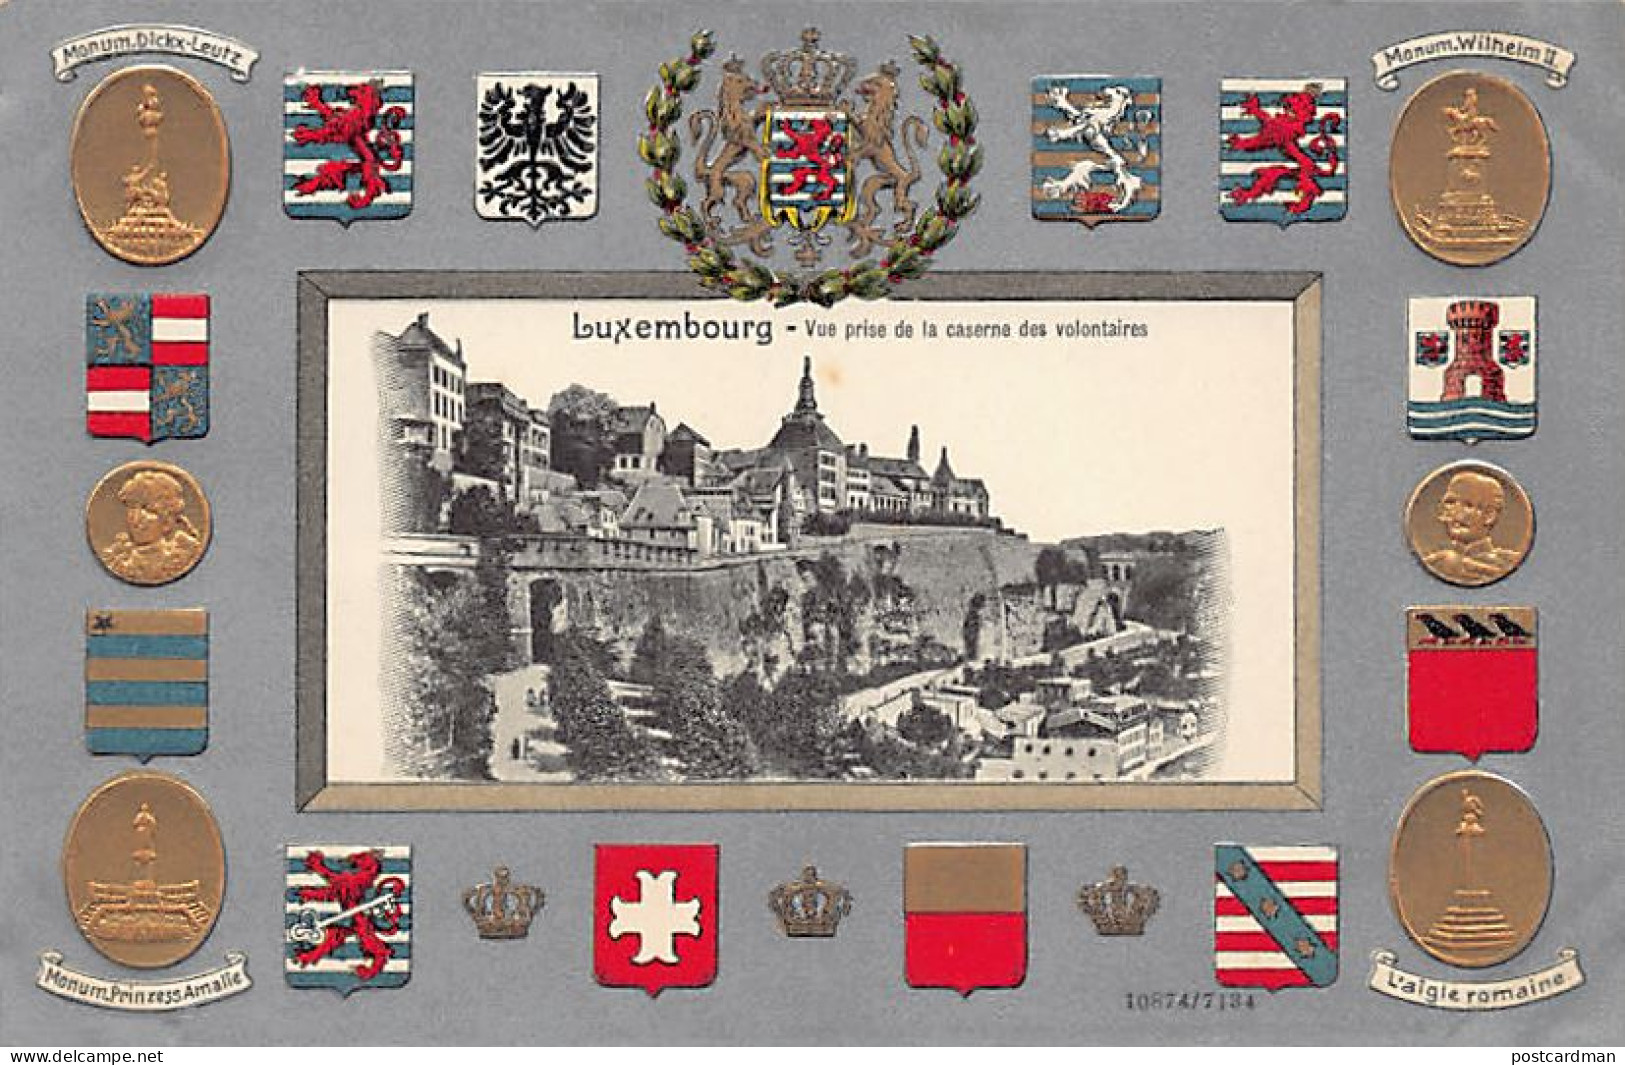 LUXEMBOURG-VILLE - Carte Gaufrée - Armoiries - Vue Prise De La Caserne Des Volontaires - Ed. H. Guggenheim & Co. 7134 - Luxembourg - Ville